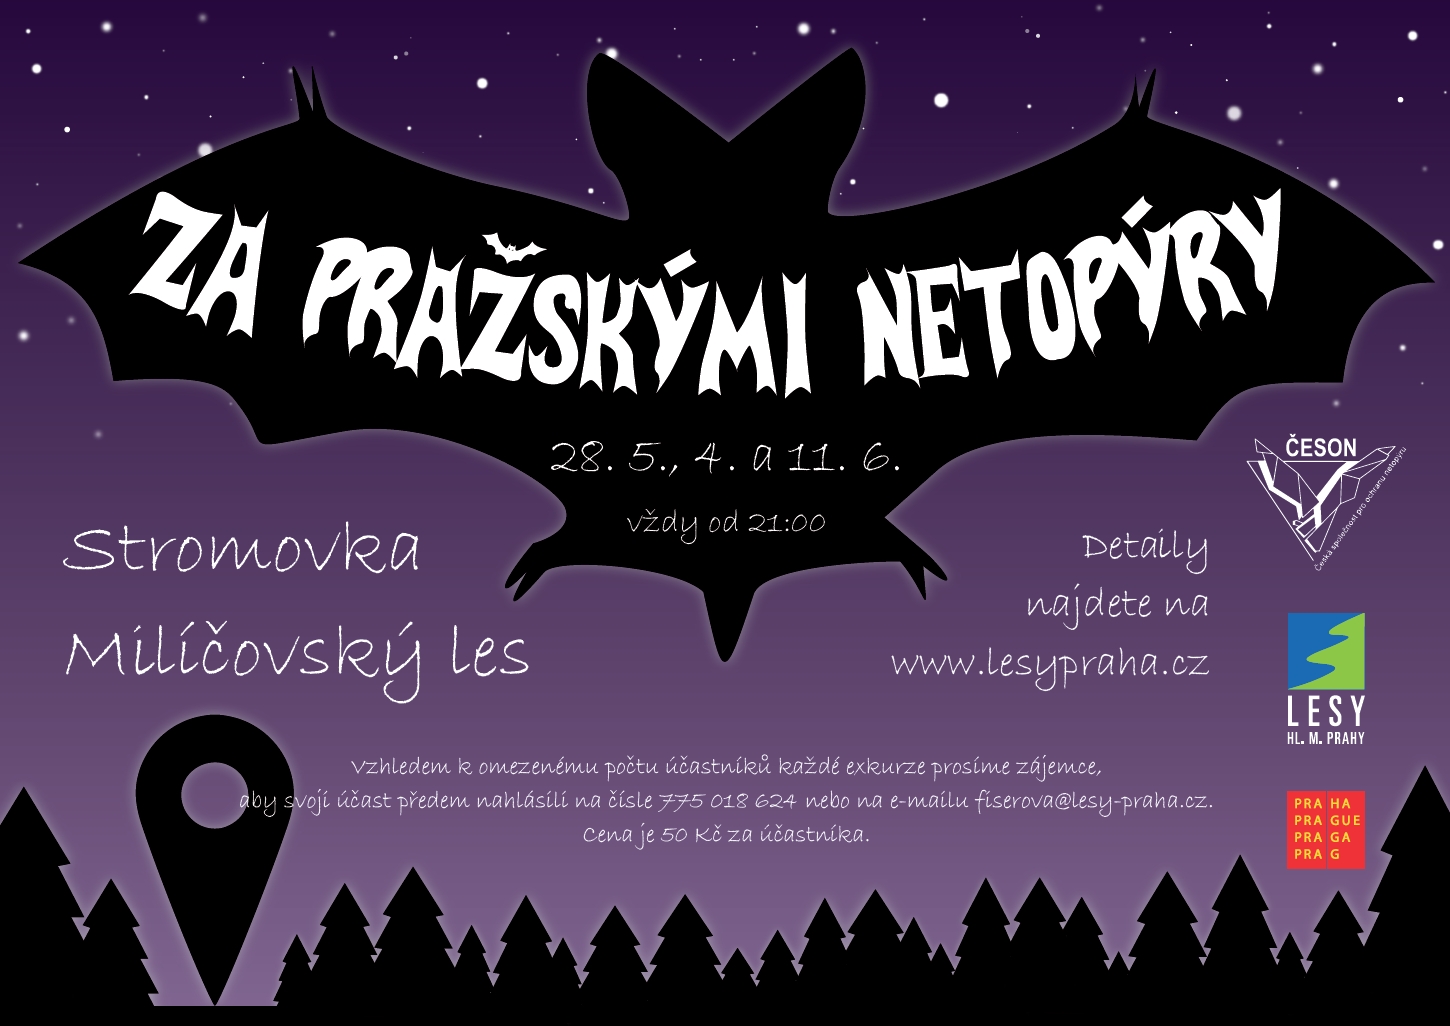 Za pražskými netopýry 2015, ilustrační obr.